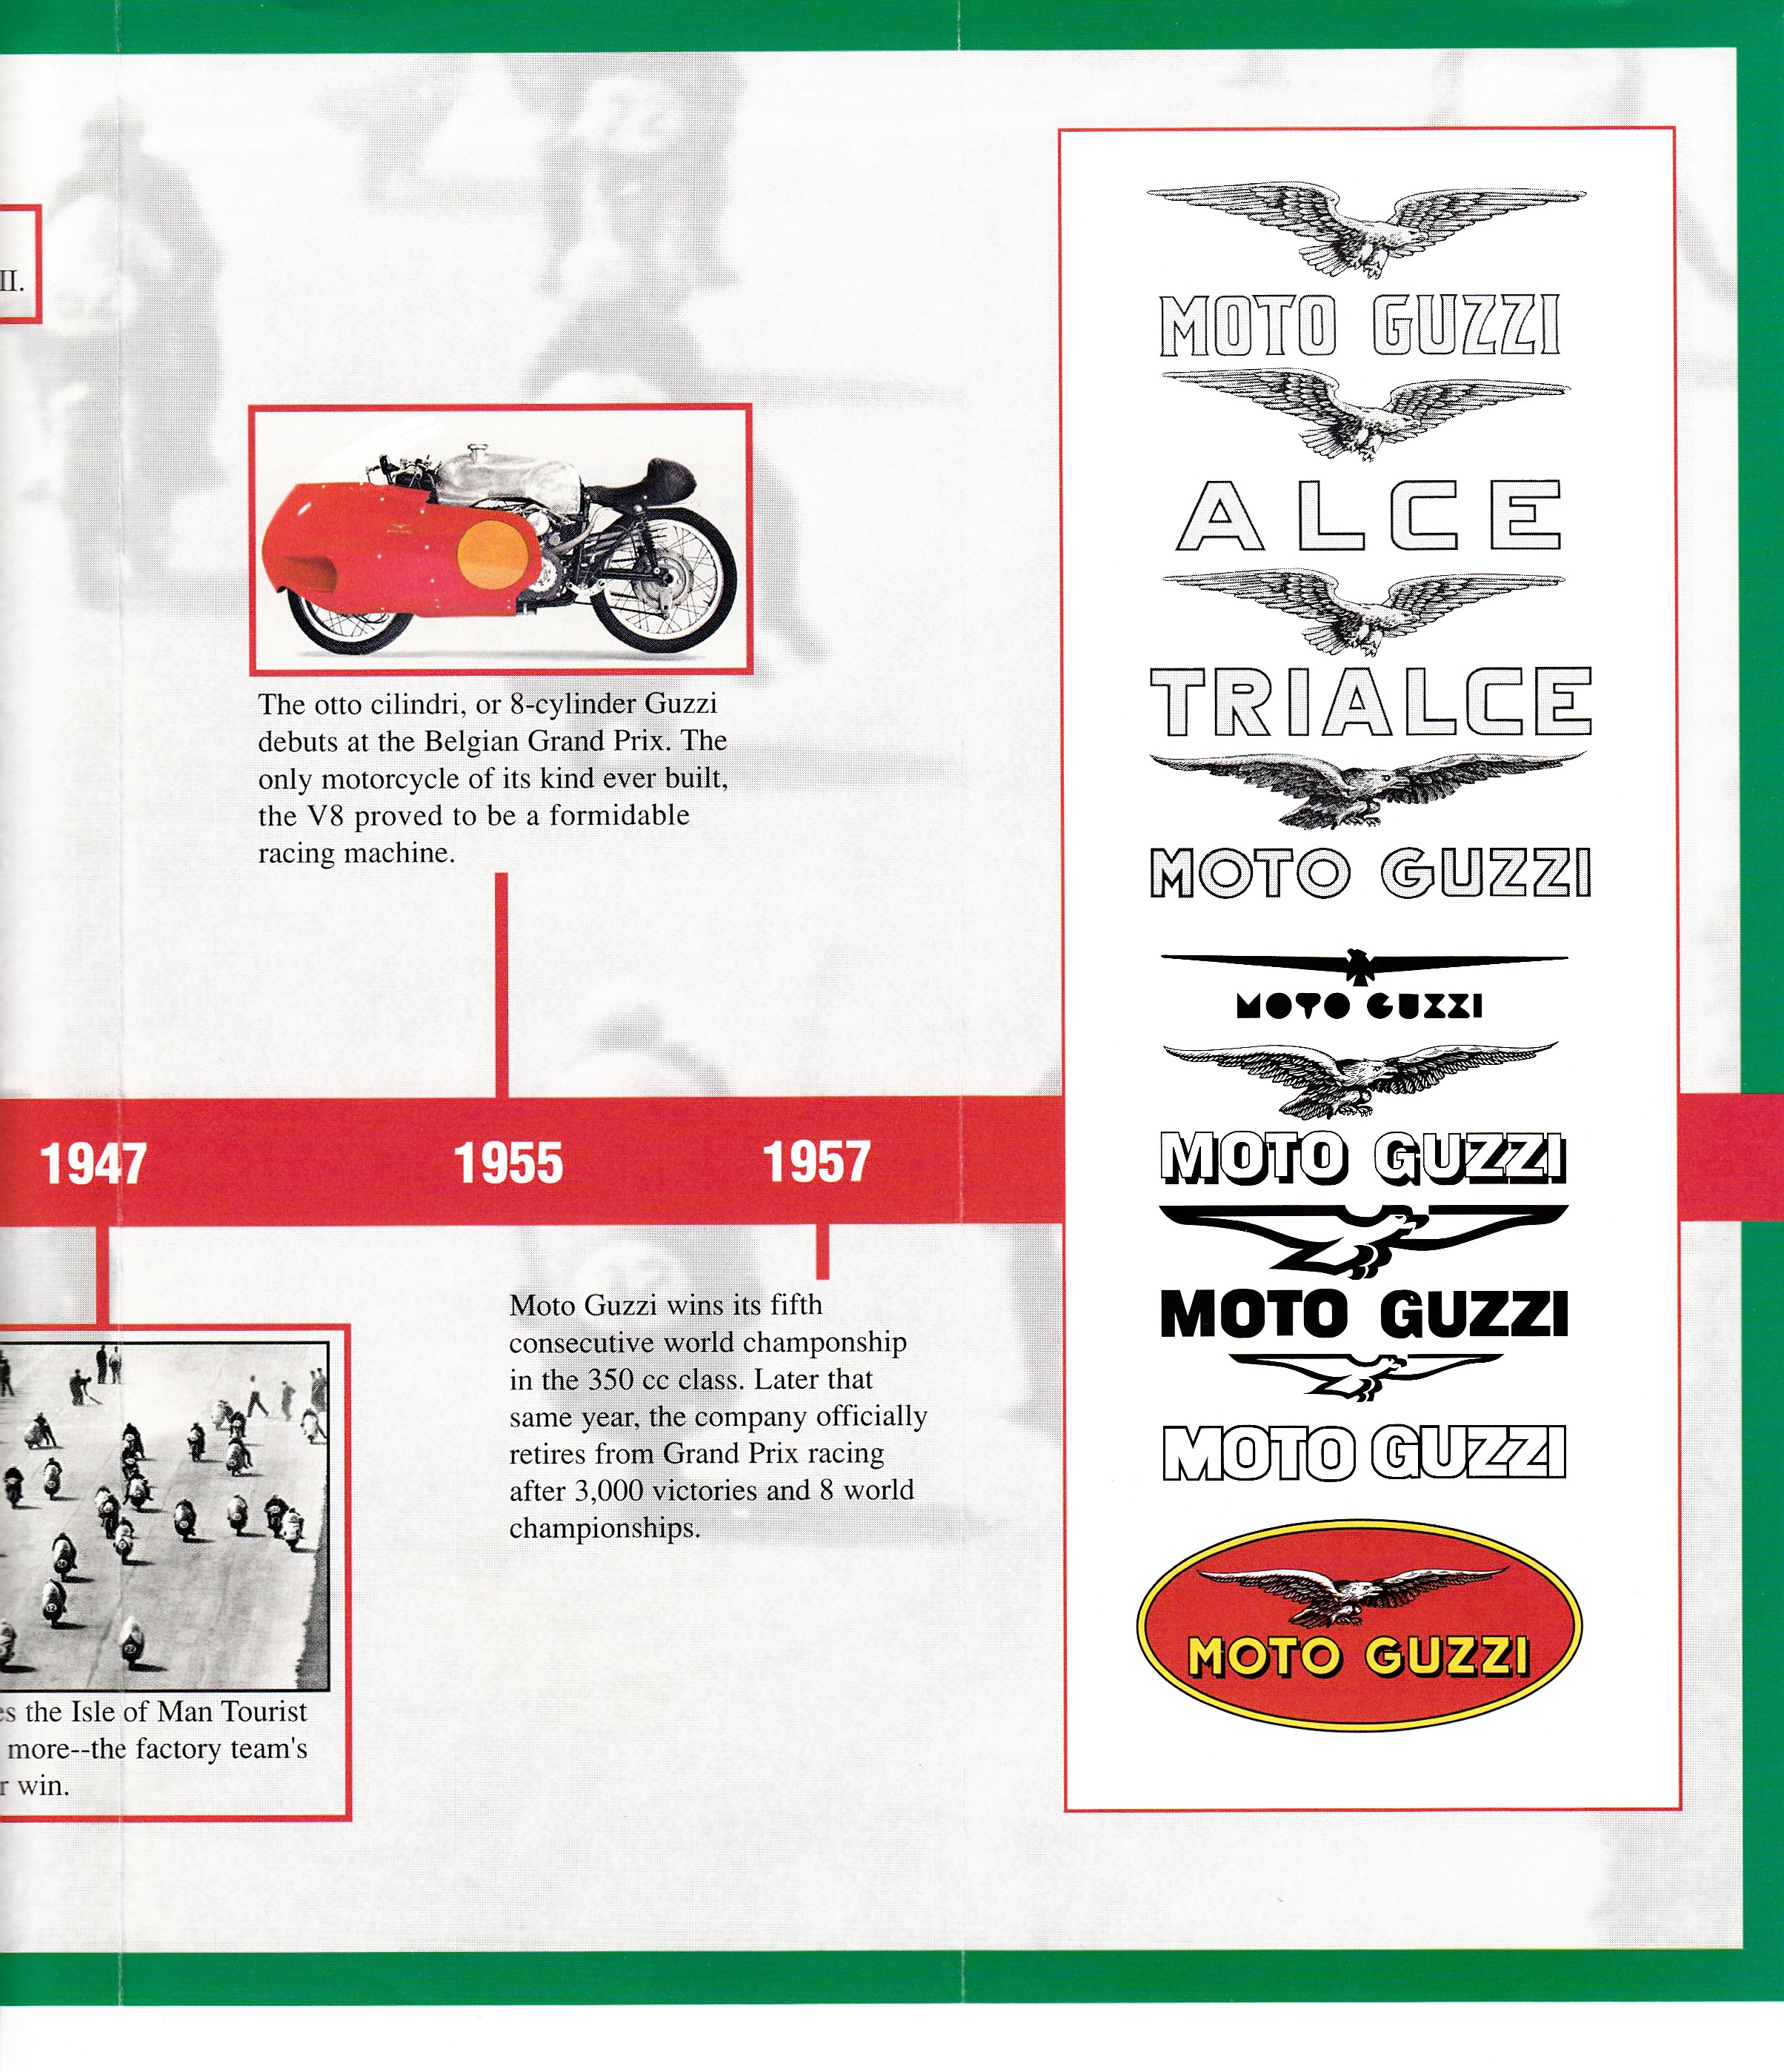 Brochure - Moto Guzzi The history of Moto Guzzi: Seven decades of Moto Guzzi excellence